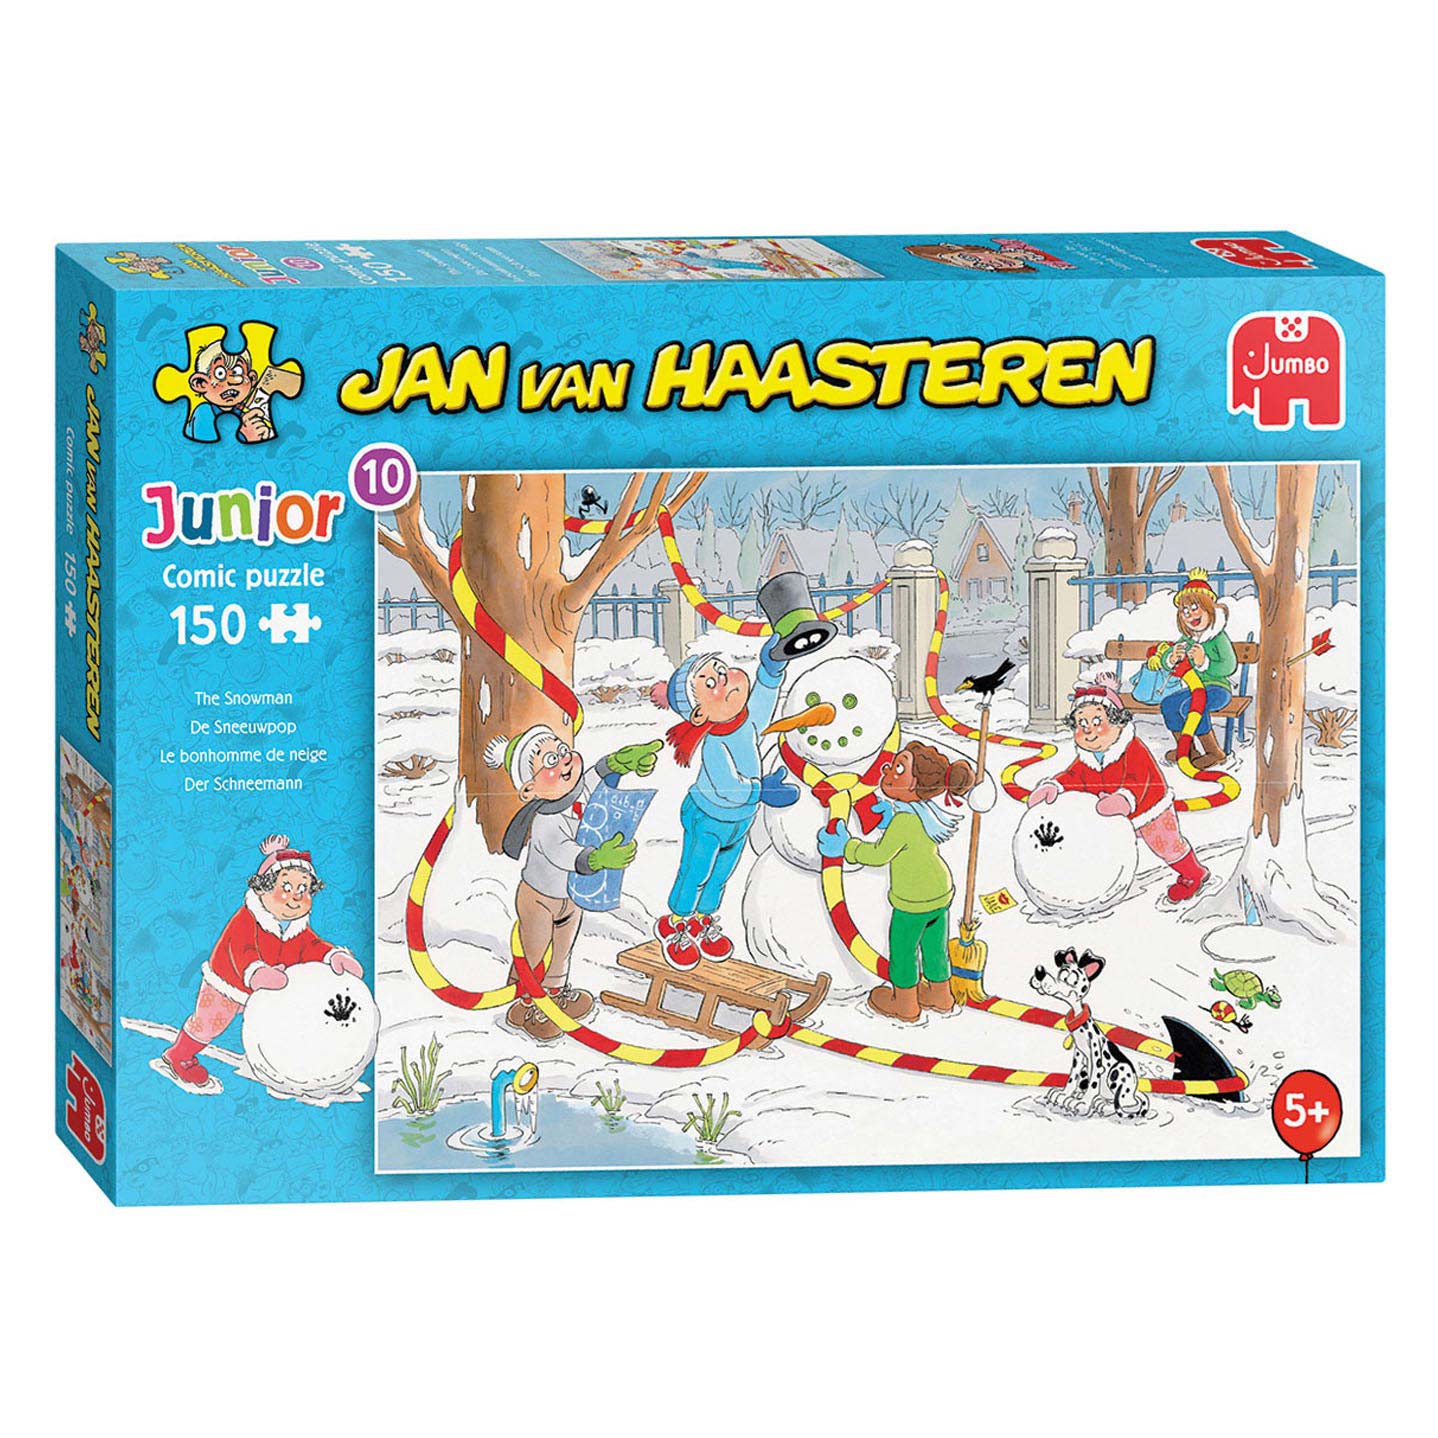 Jan van Haasteren Puzzle Junior - Bonhomme de neige, 150 pcs.